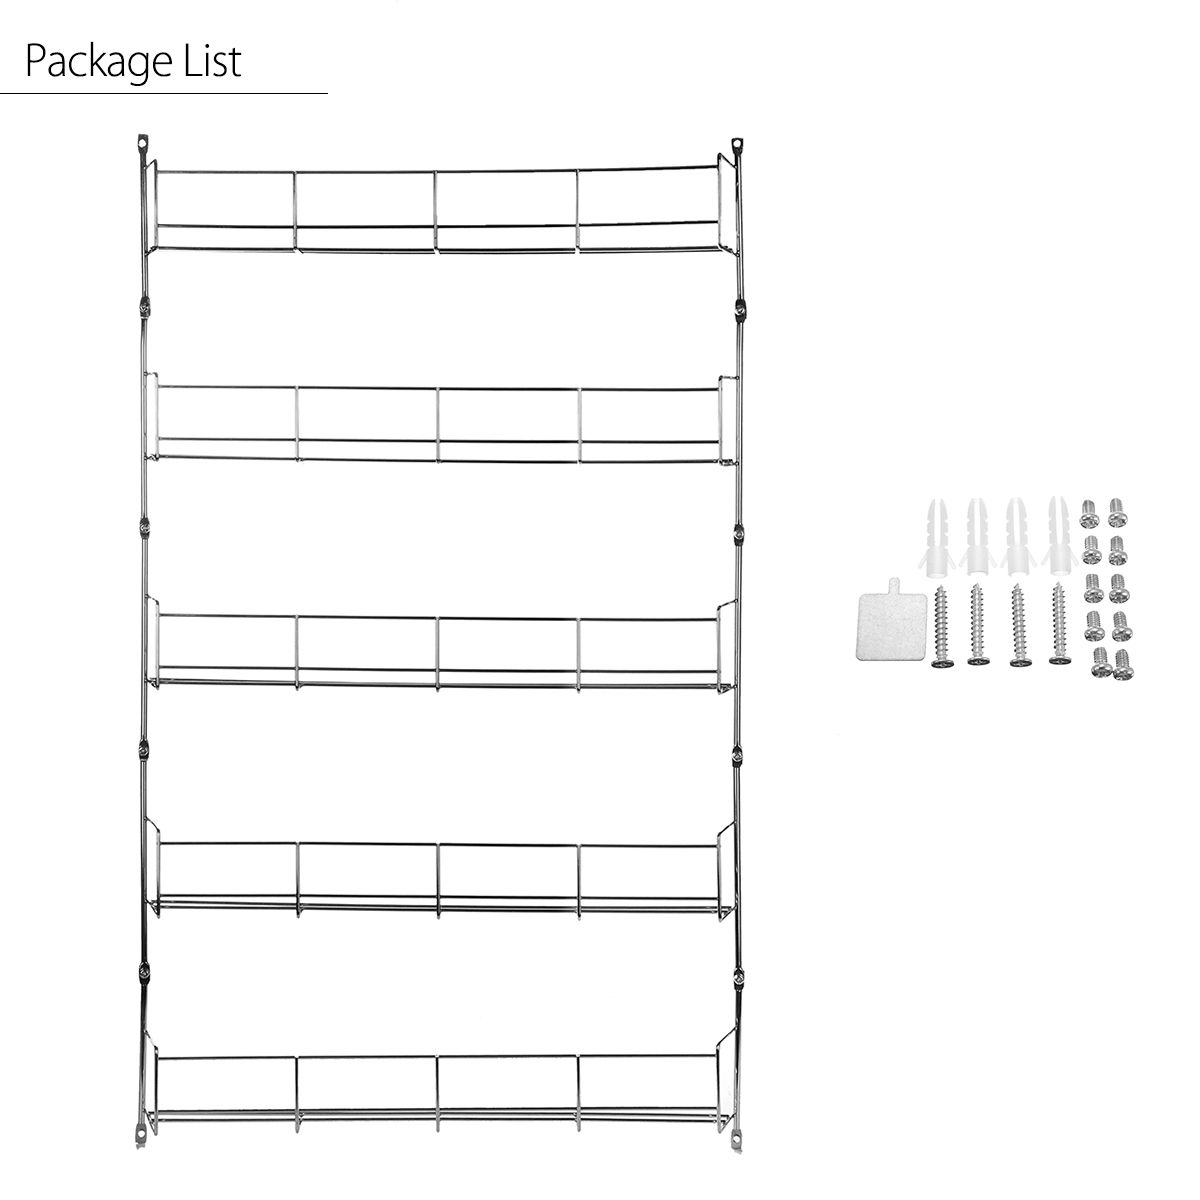 5-Tiers-Kitchen-Spice-Rack-Cabinet-Organizer-Wall-Mount-Storage-Shelf-Holder-Kitchen-Storage-Rack-1306605